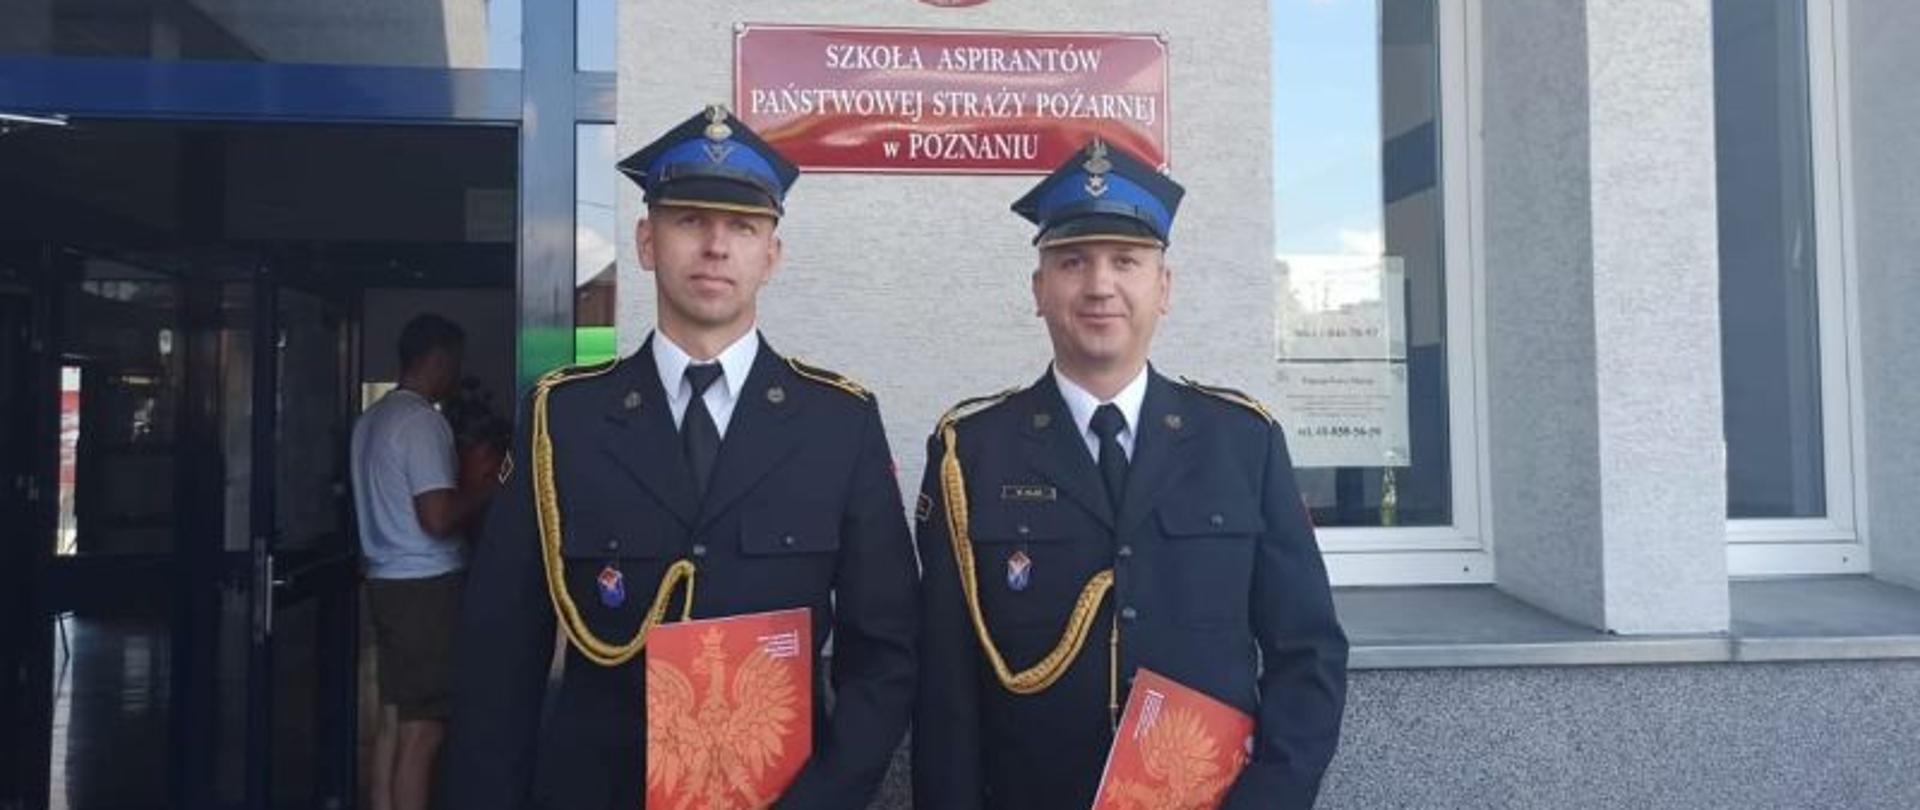 W centralnym punkcie zdjęcia stoi dwóch strażaków w galowych mundurach.Są to dwaj awansowani funkcjonariusze KP PSP Białogard. W tle widać czerwoną tabliczkę z nazwą szkoły.